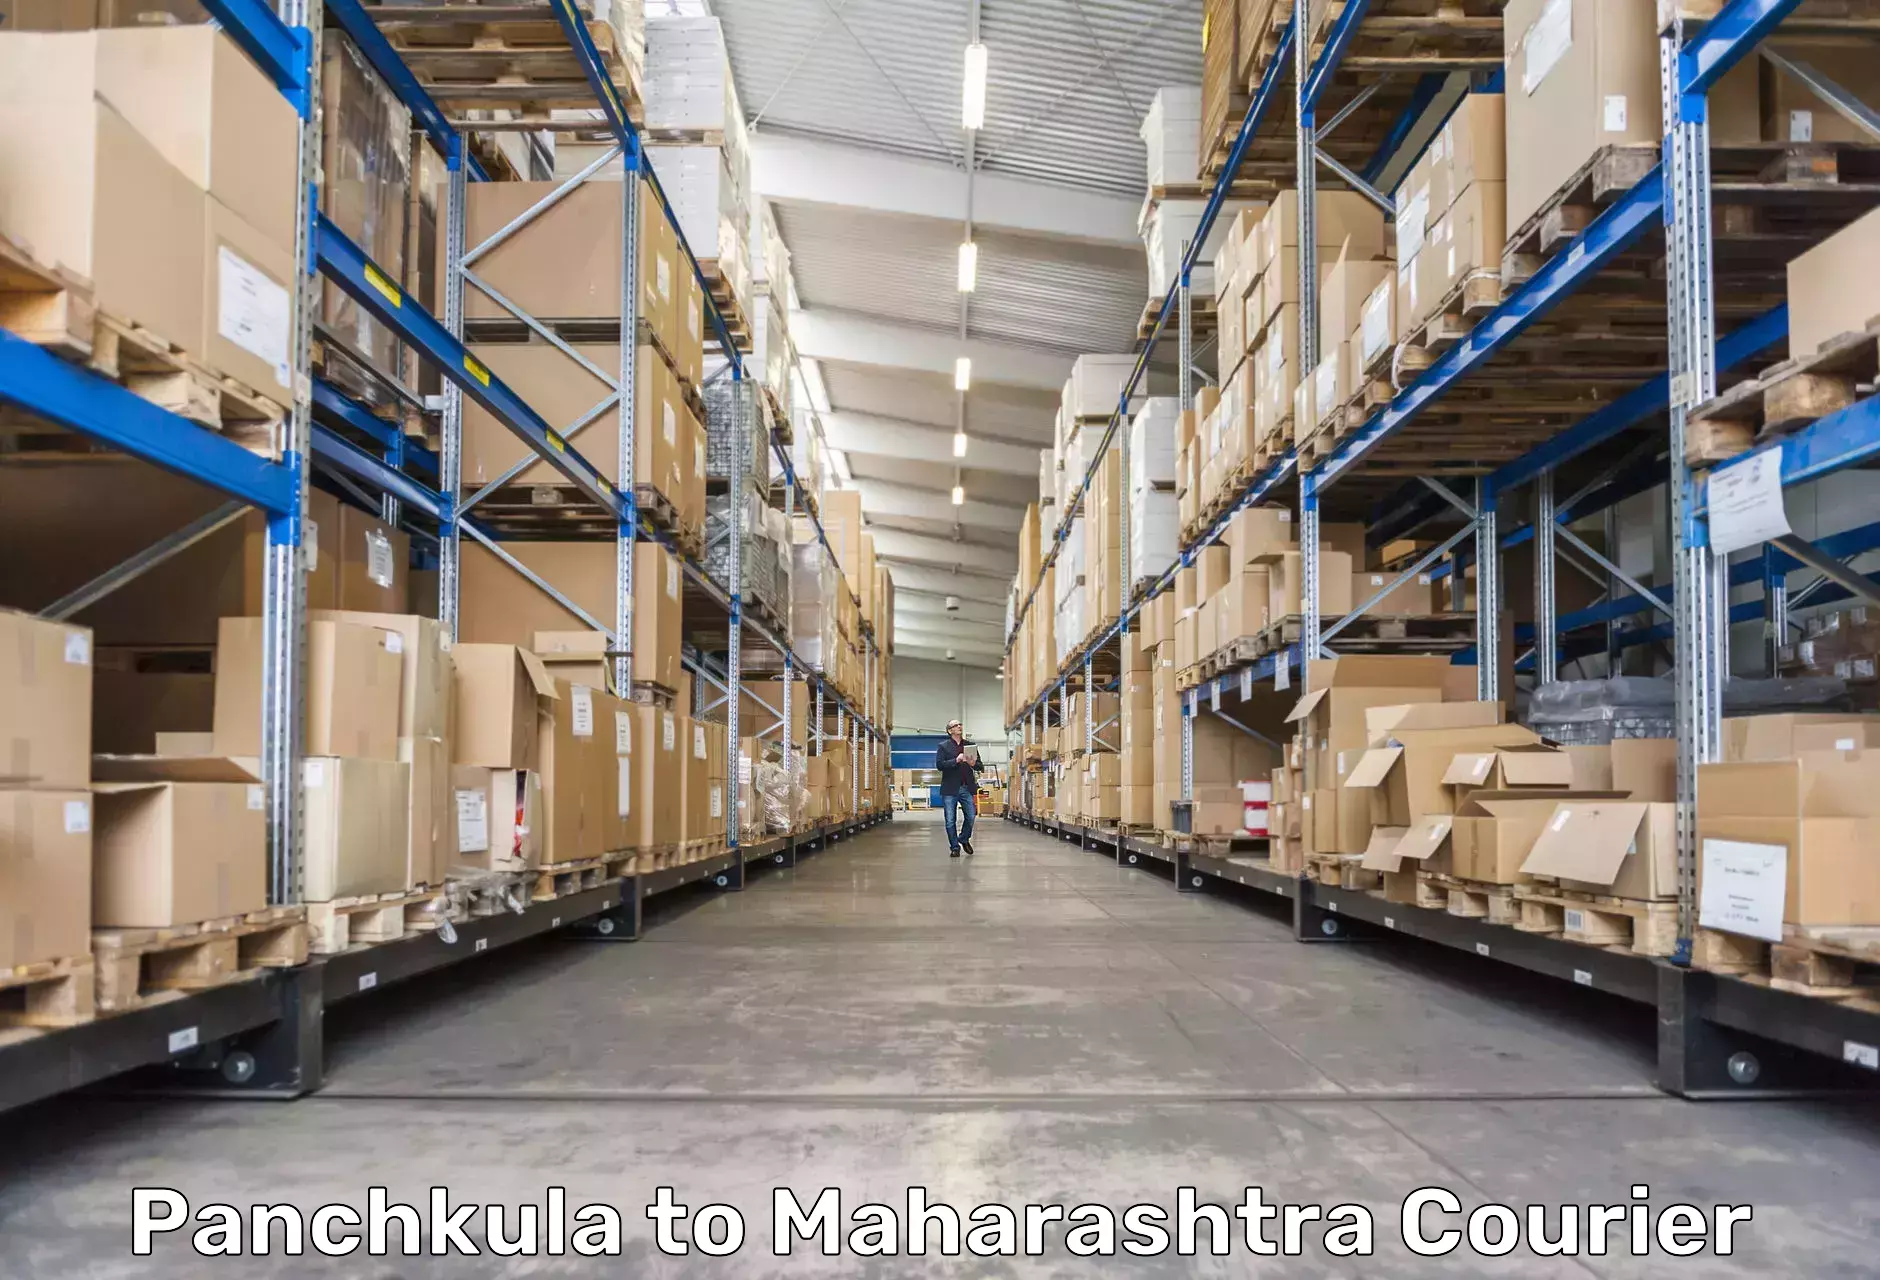 Holiday shipping services Panchkula to Mahim